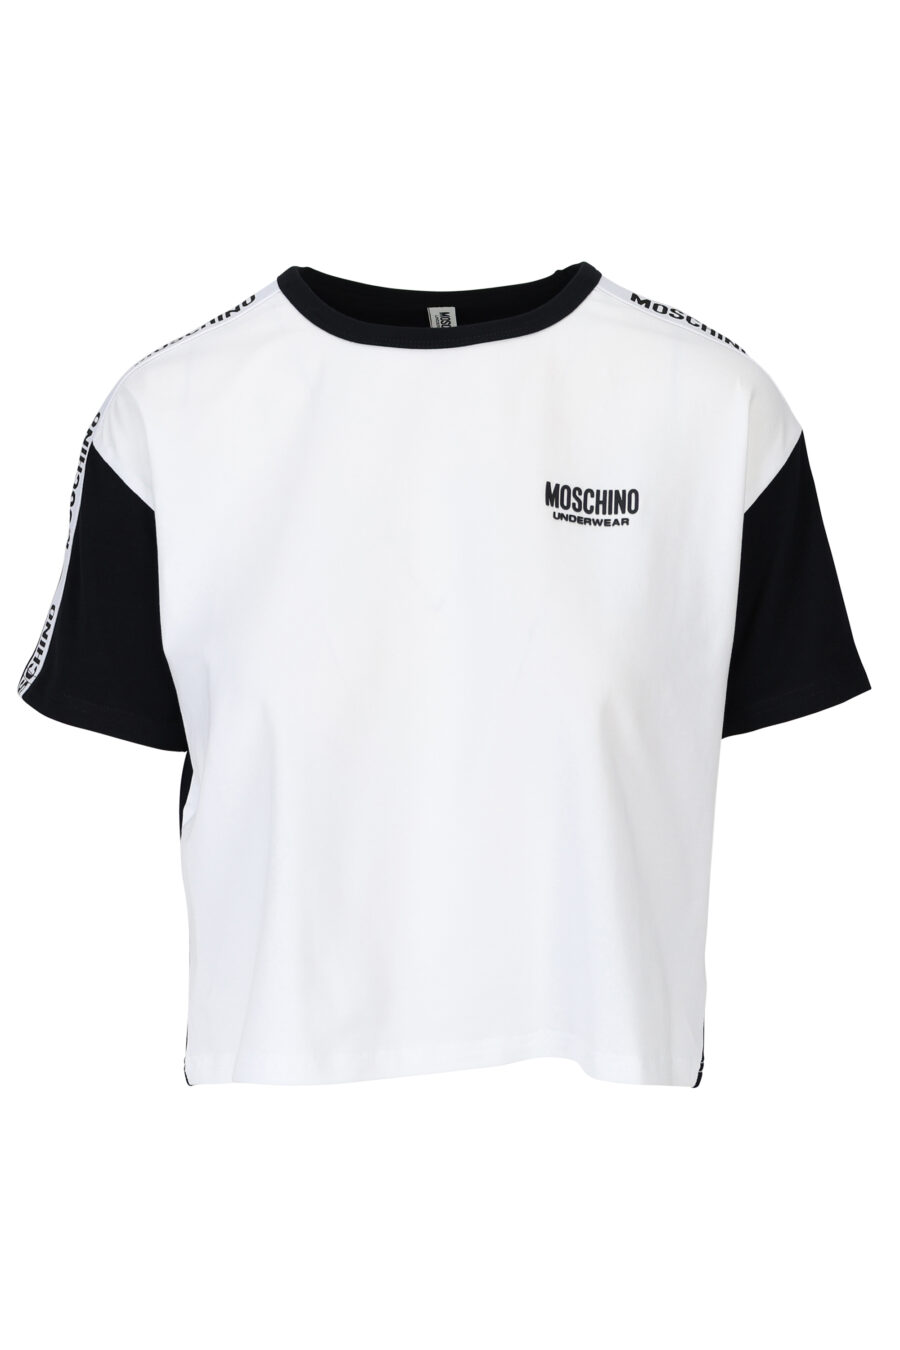 T-shirt branca com mangas e costas pretas e logótipo com fita - 667113062037